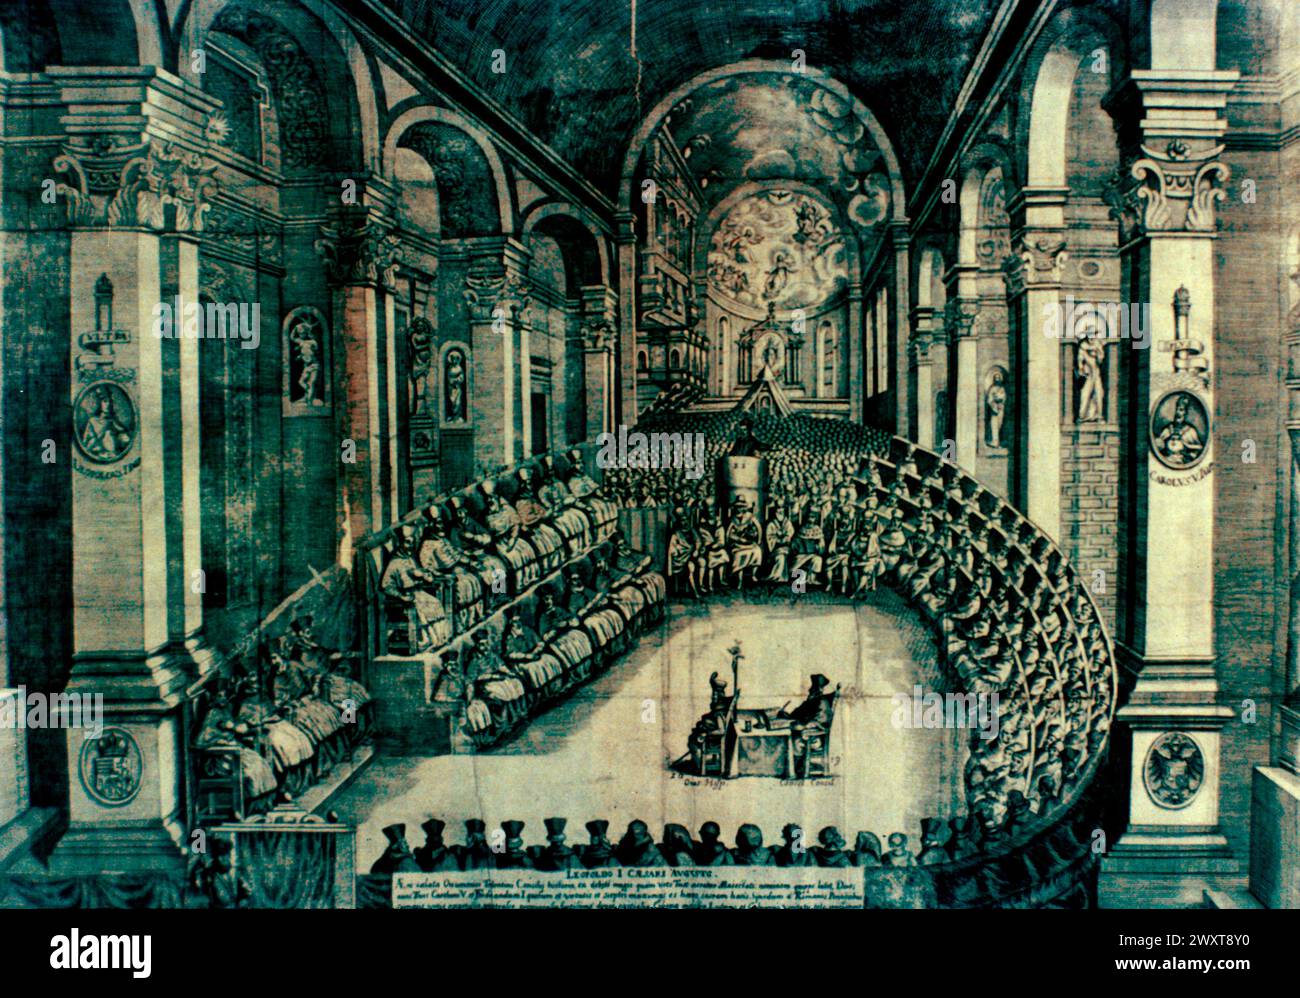 Le Concile de trente, Italie, illustration, XVIe siècle Banque D'Images